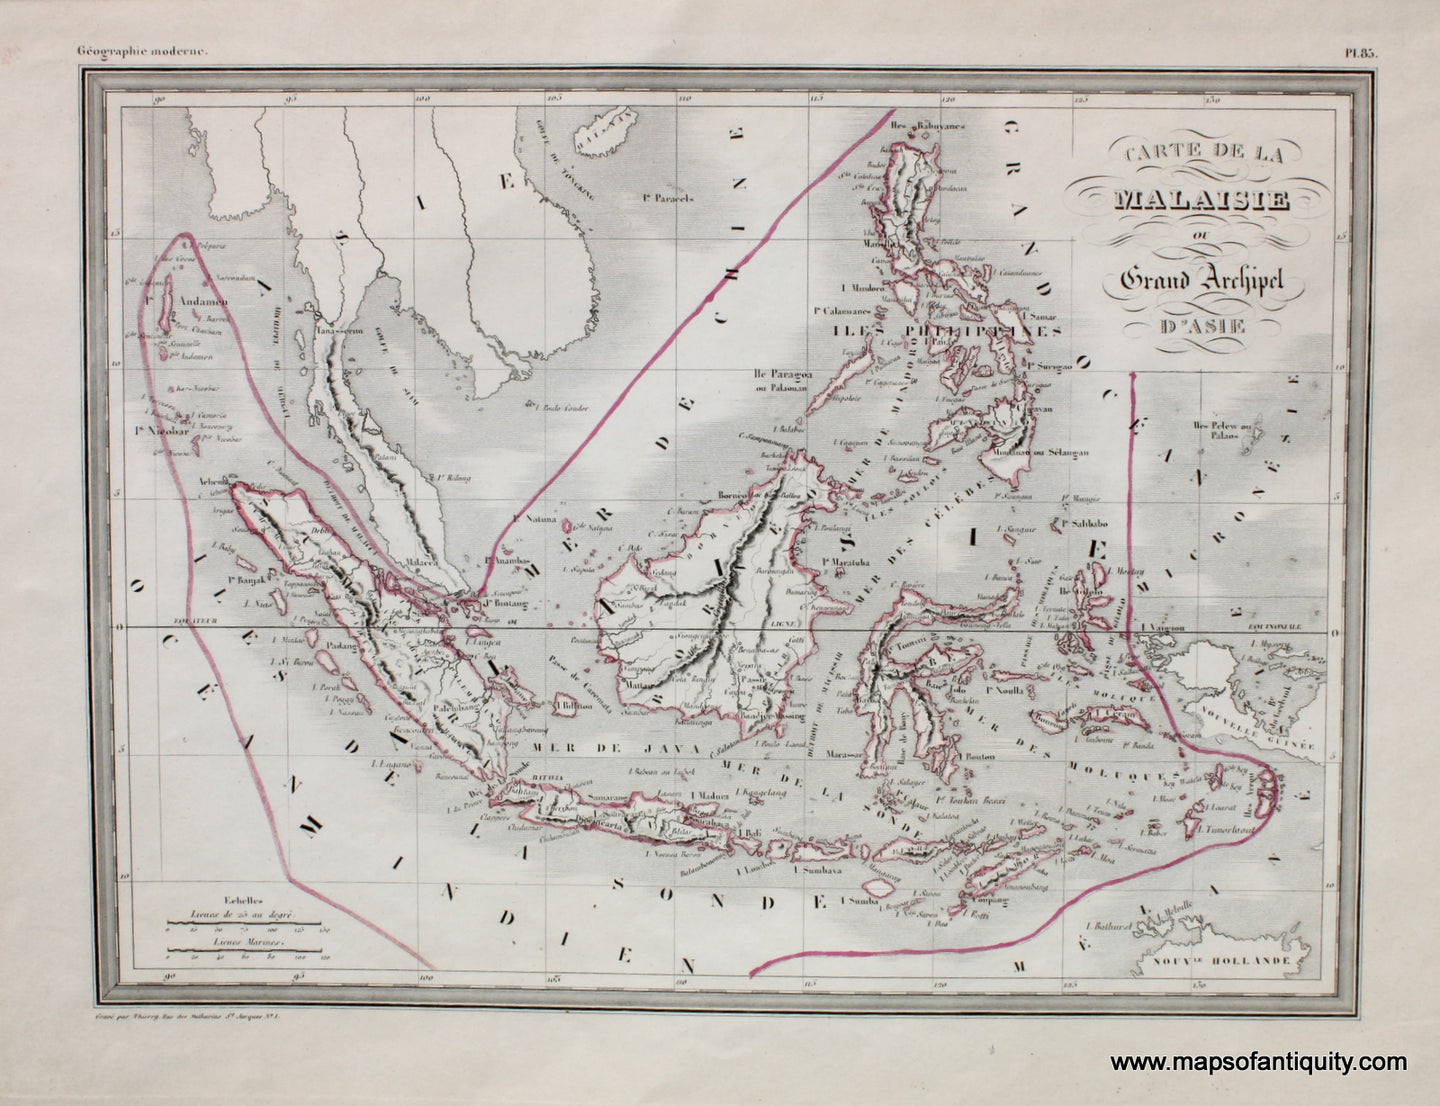 Antique-Hand-Colored-Map-Carte-de-la-Malaisie-ou-Grand-Archipel-d'Asie.-Asia--1842-Malte-Brun-Maps-Of-Antiquity